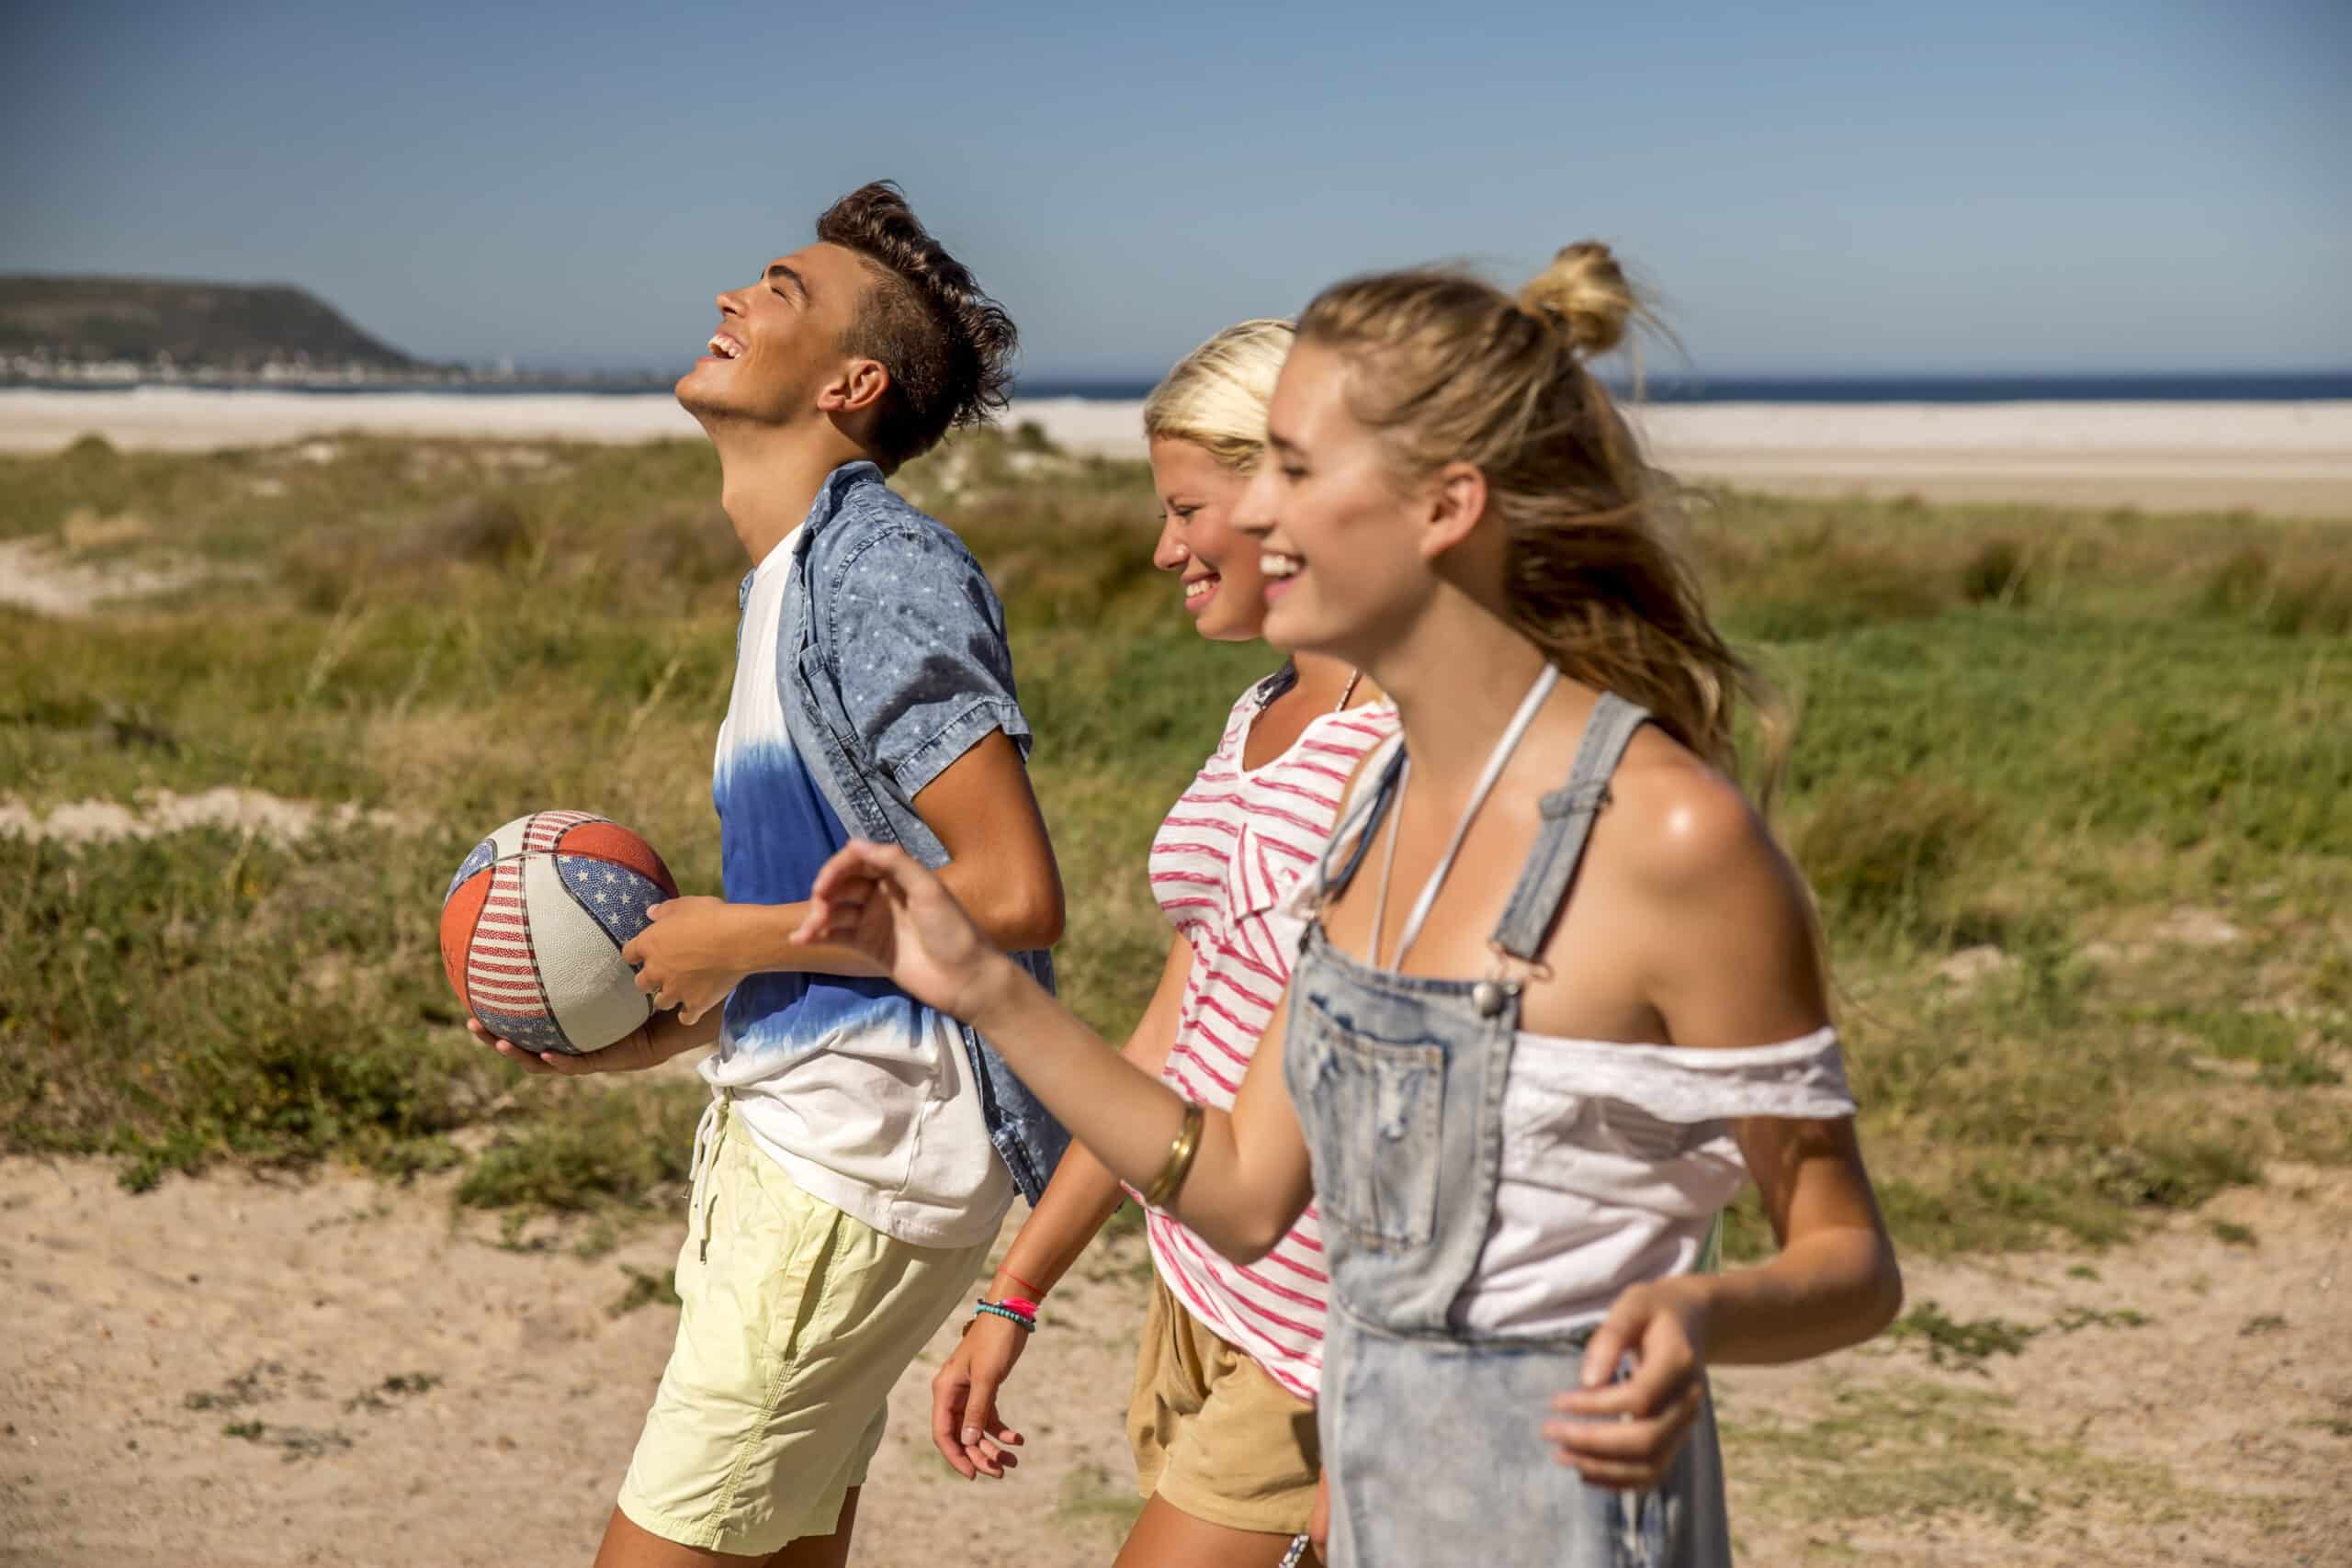 Drei junge Erwachsene lachen und gehen an einem Sandstrand spazieren, einer hält einen Volleyball. Sie genießen einen sonnigen Tag mit einem klaren blauen Himmel und fernen Hügeln im Hintergrund. © Fotografie Tomas Rodriguez